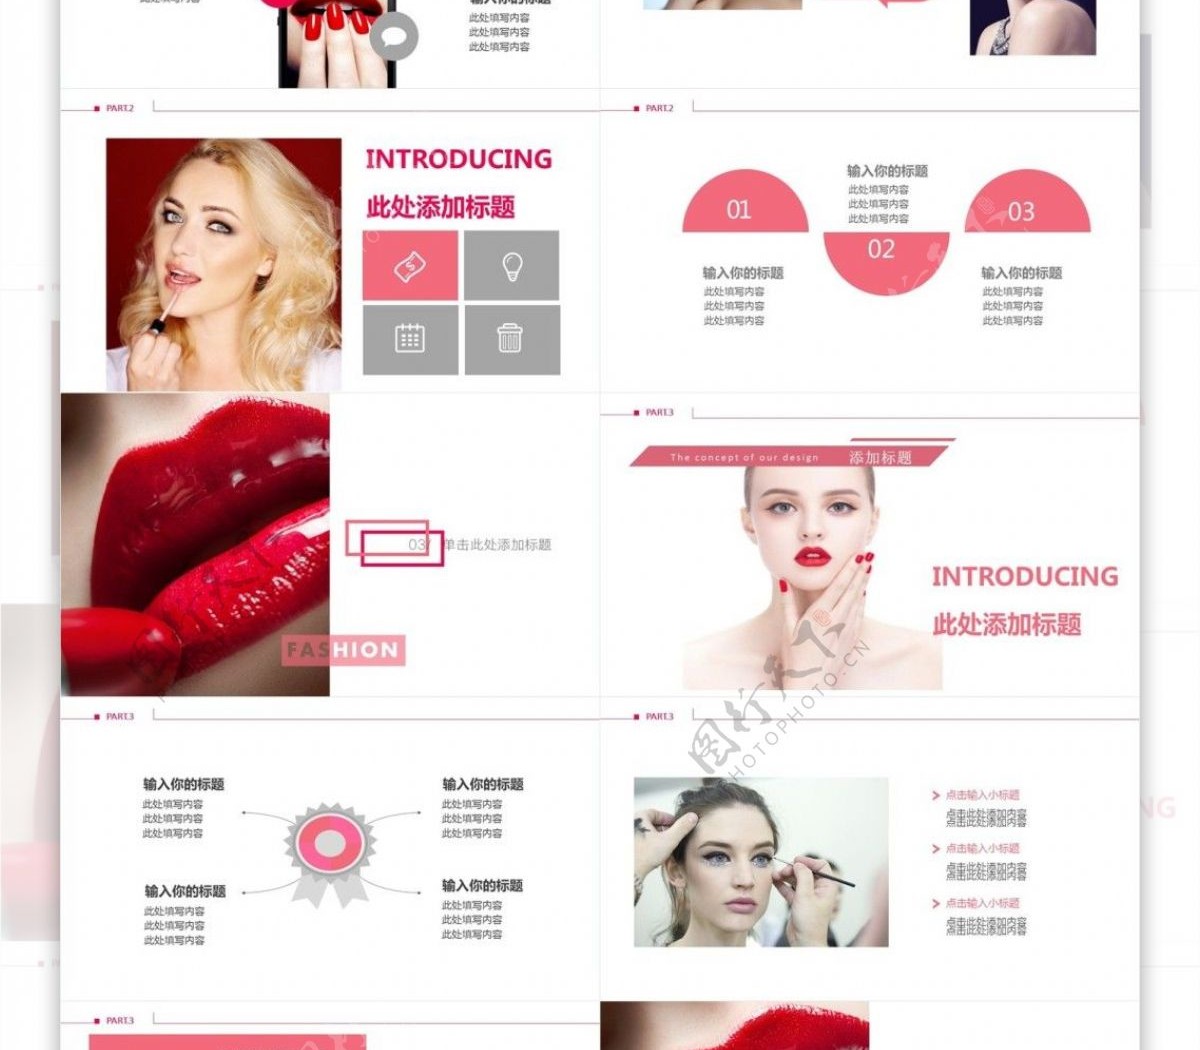 时尚彩妆宣传画册PPT模板